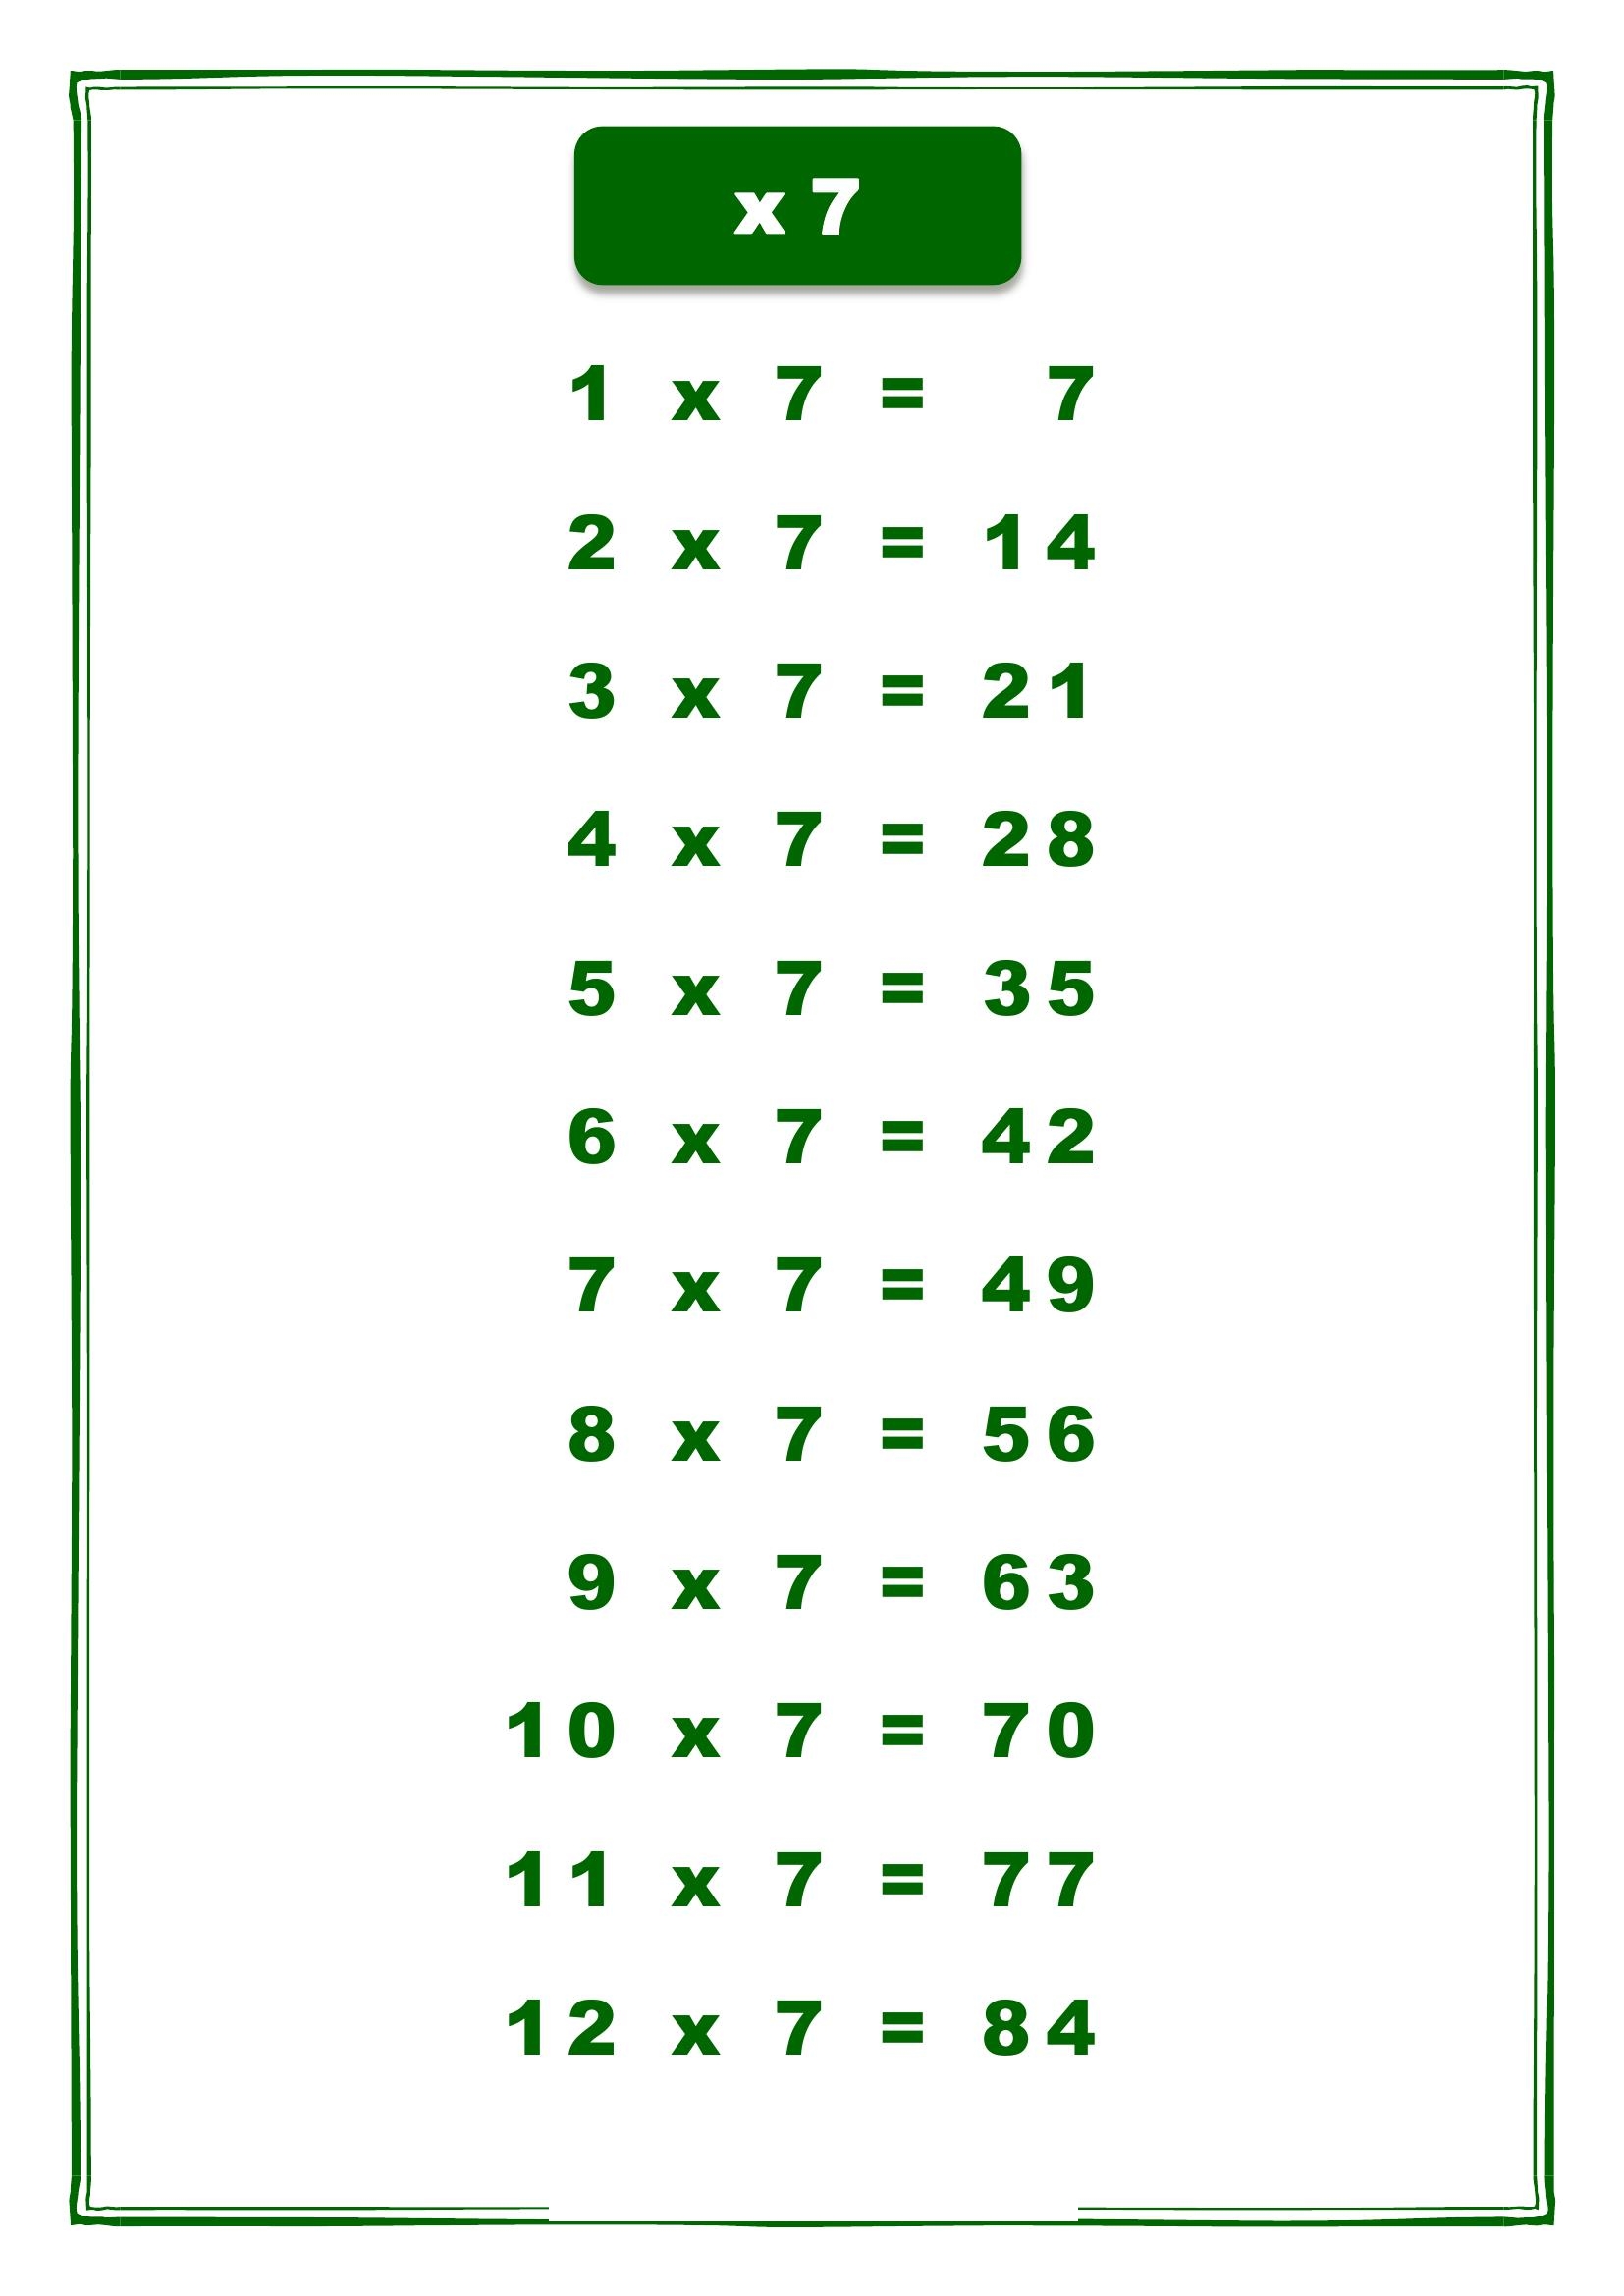 таблица умножения на 7